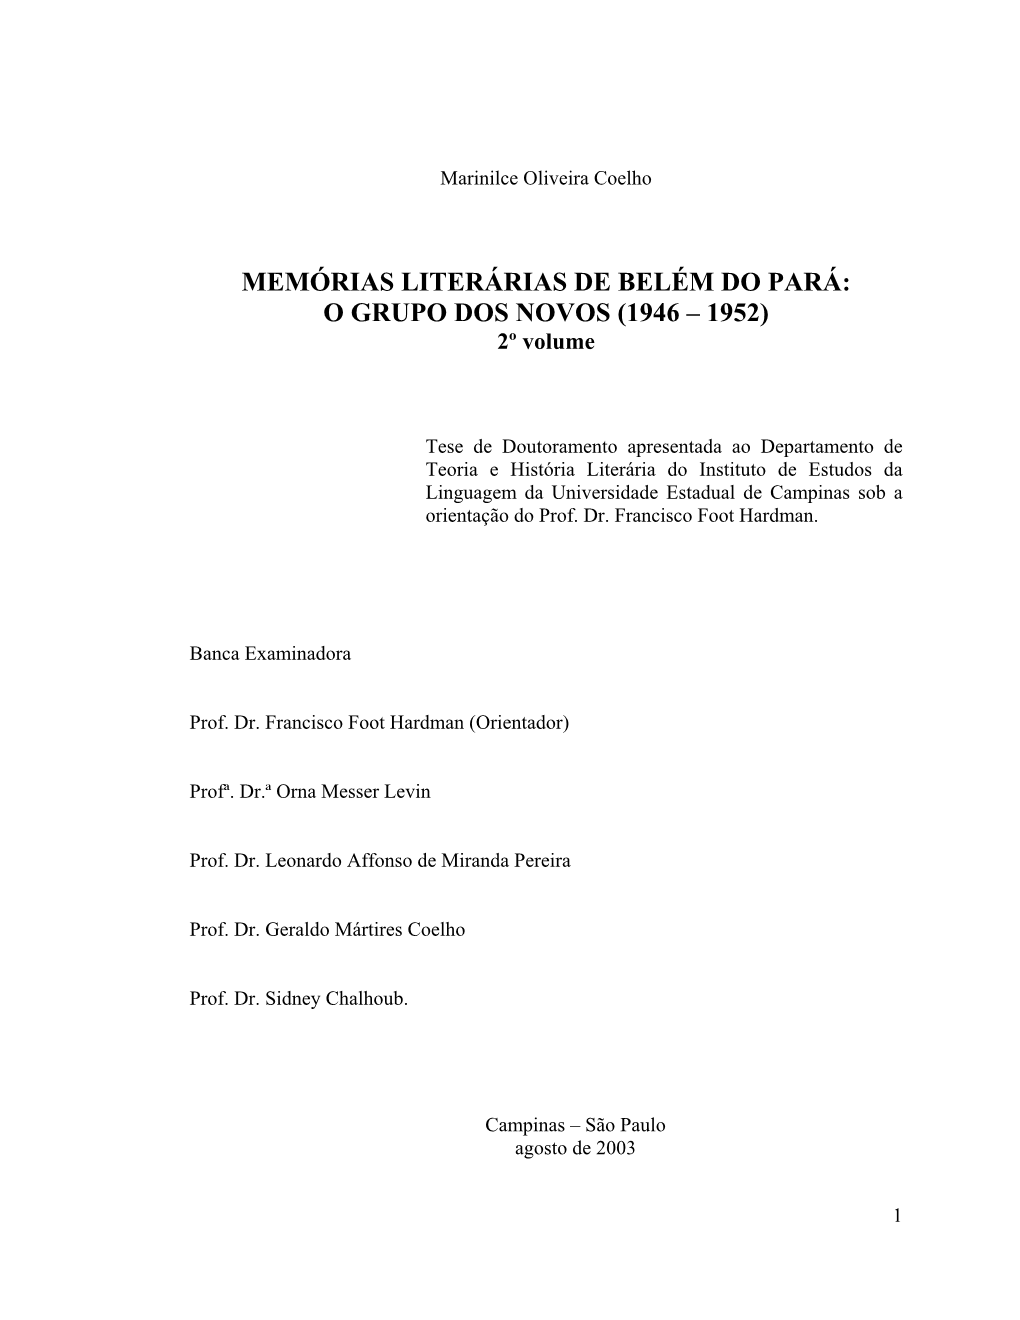 MEMÓRIAS LITERÁRIAS DE BELÉM DO PARÁ: O GRUPO DOS NOVOS (1946 – 1952) 2º Volume